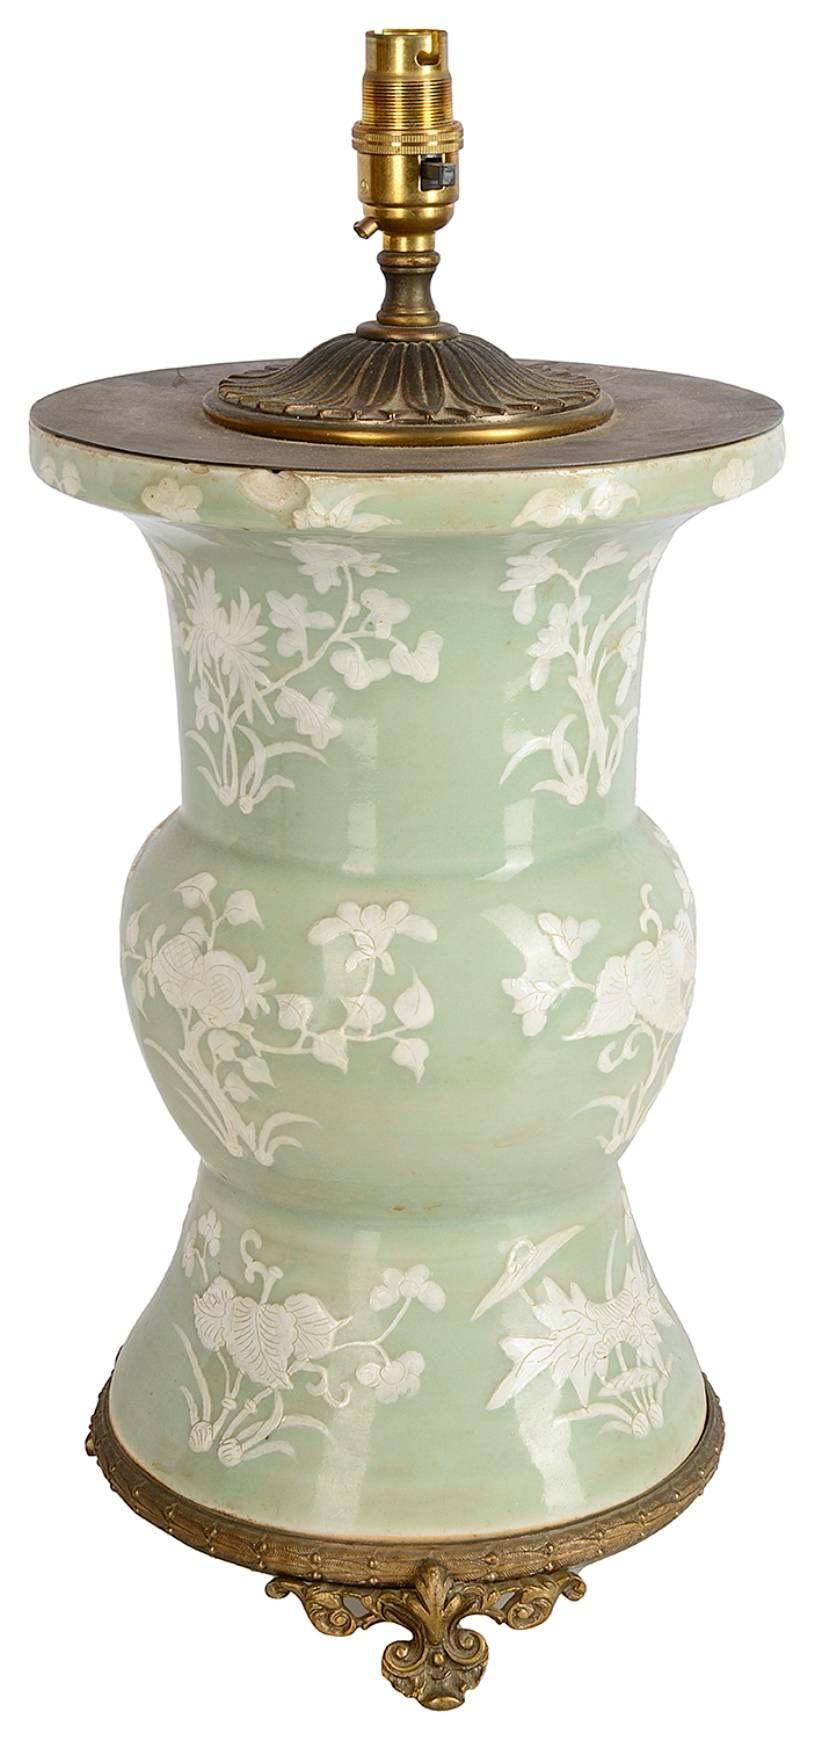 Vase ou lampe en céladon chinois de bonne qualité, datant du XIXe siècle, à décor floral et monté dans une base et un couvercle en bronze doré.